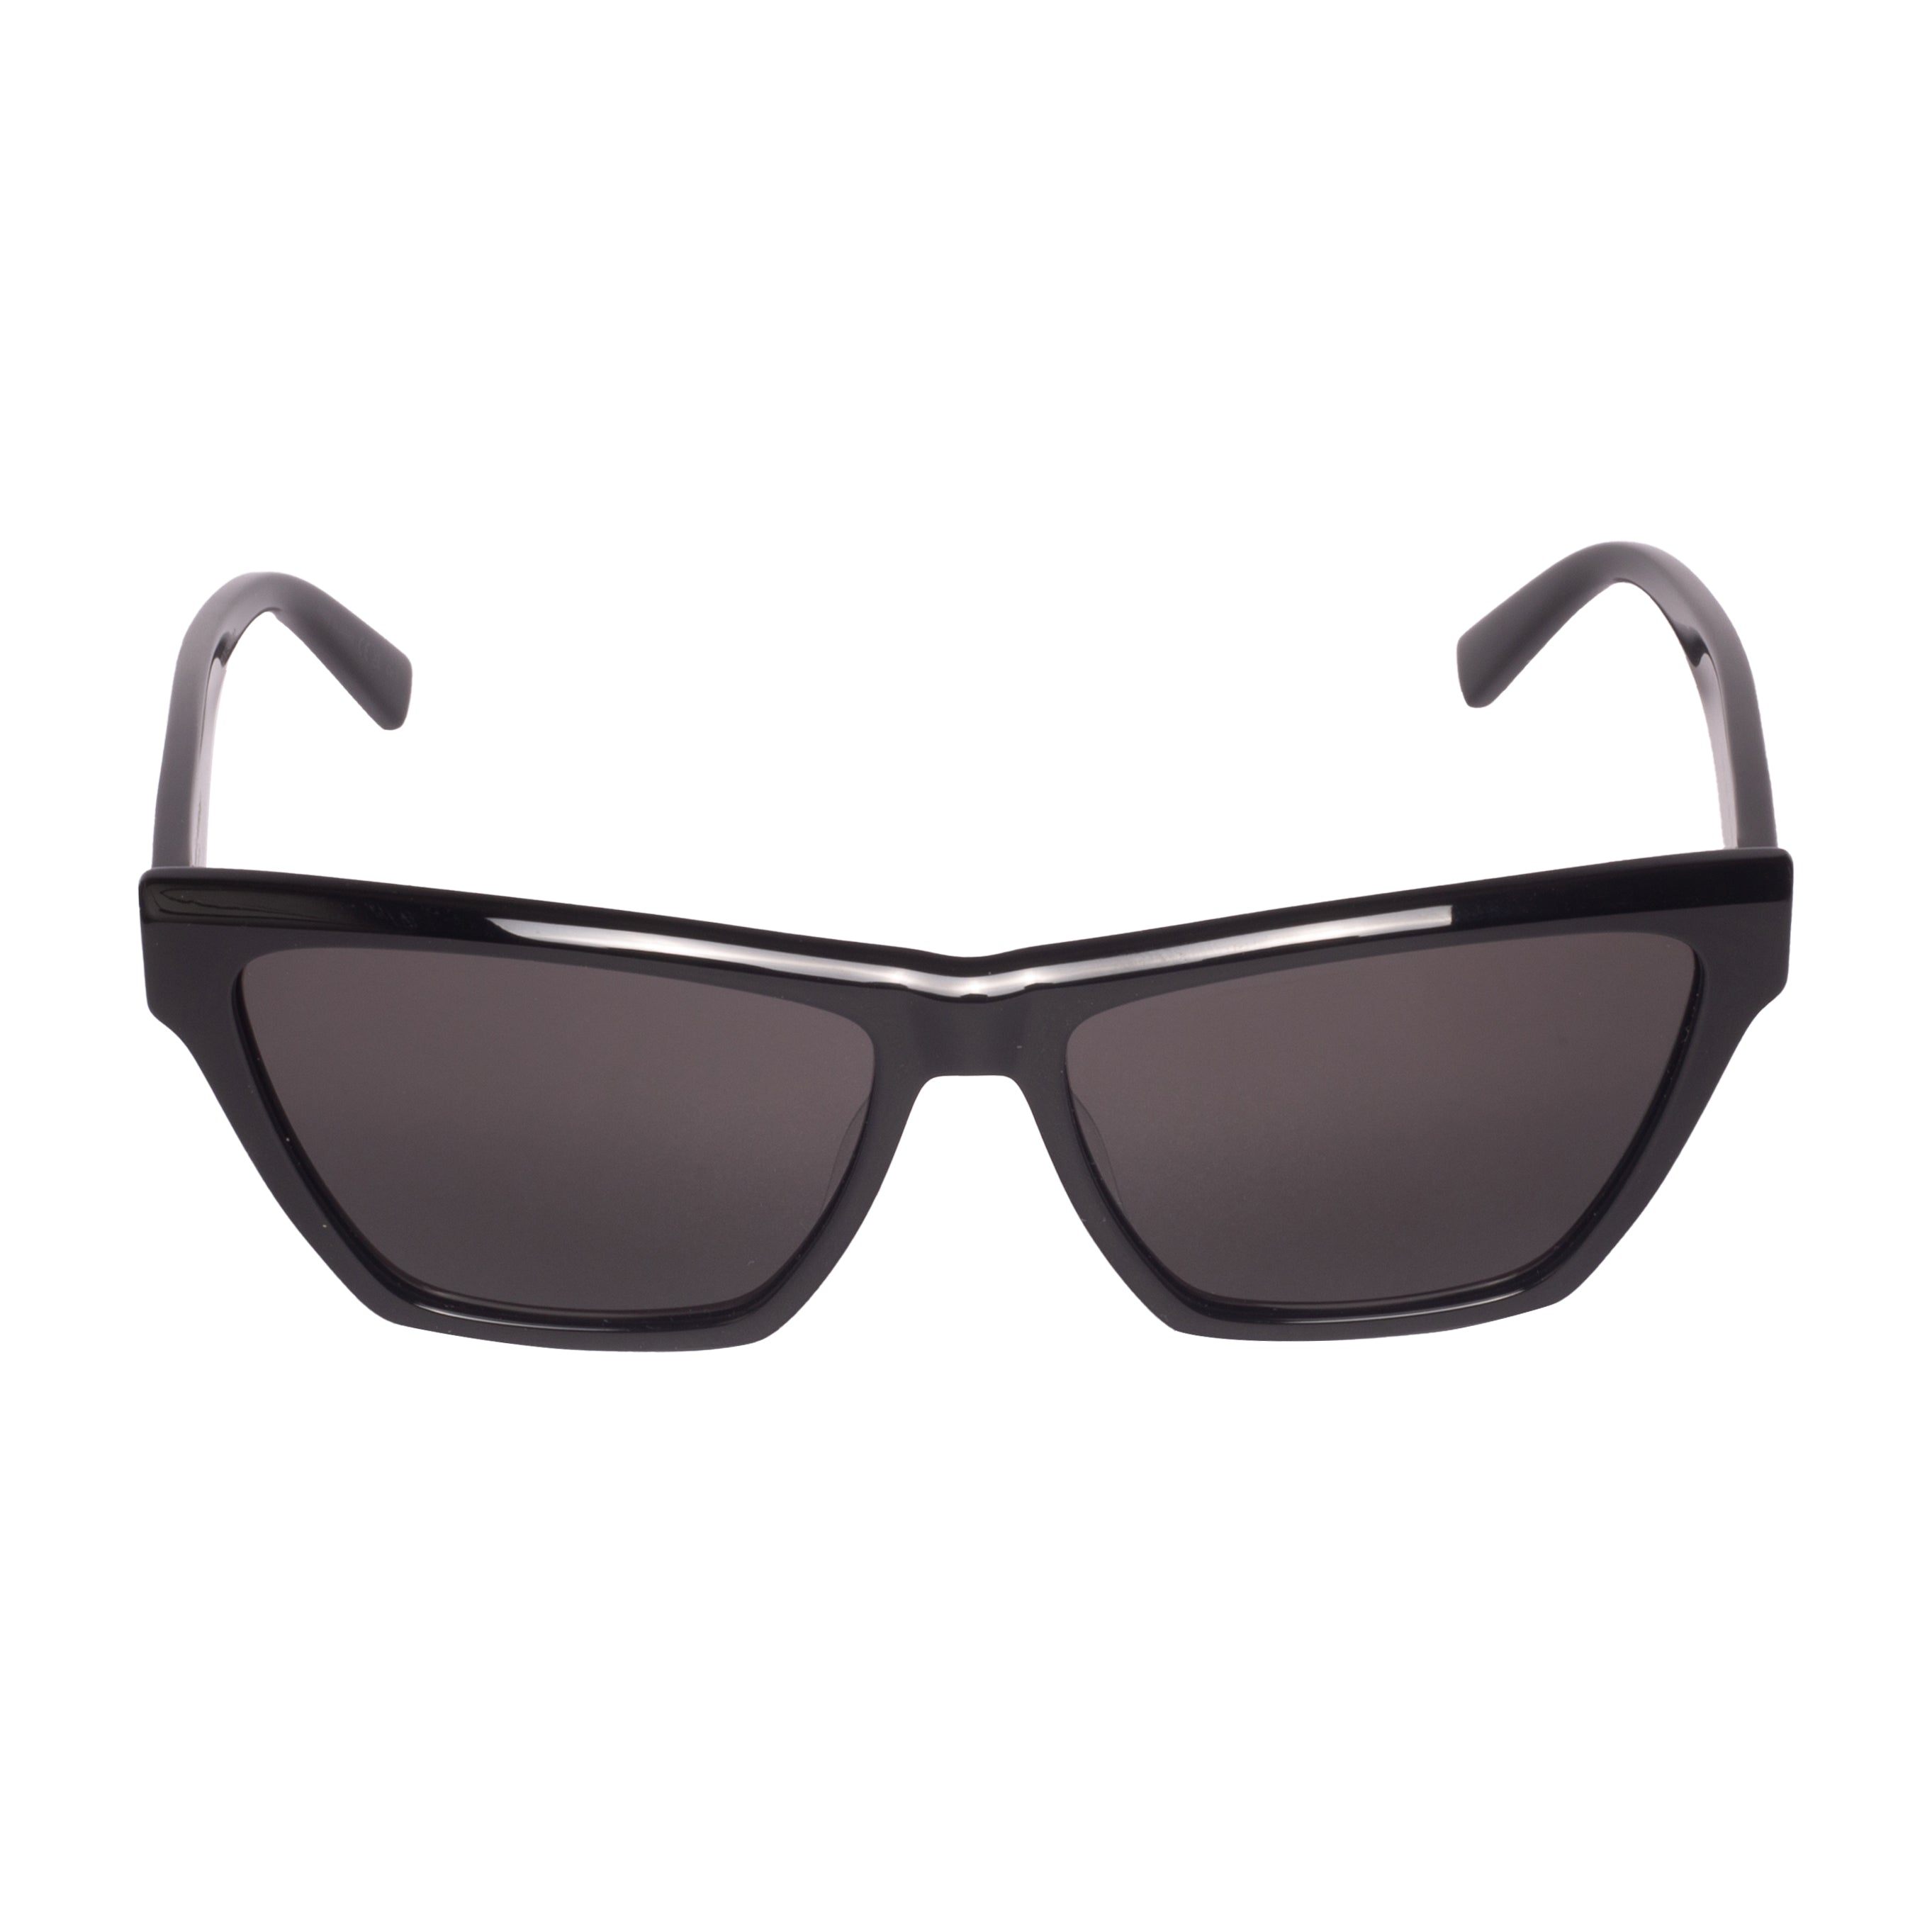 Saint Laurent-SL M103-58-002 Sunglasses - Premium Sunglasses from Saint Laurent - Just Rs. 24100! Shop now at Laxmi Opticians